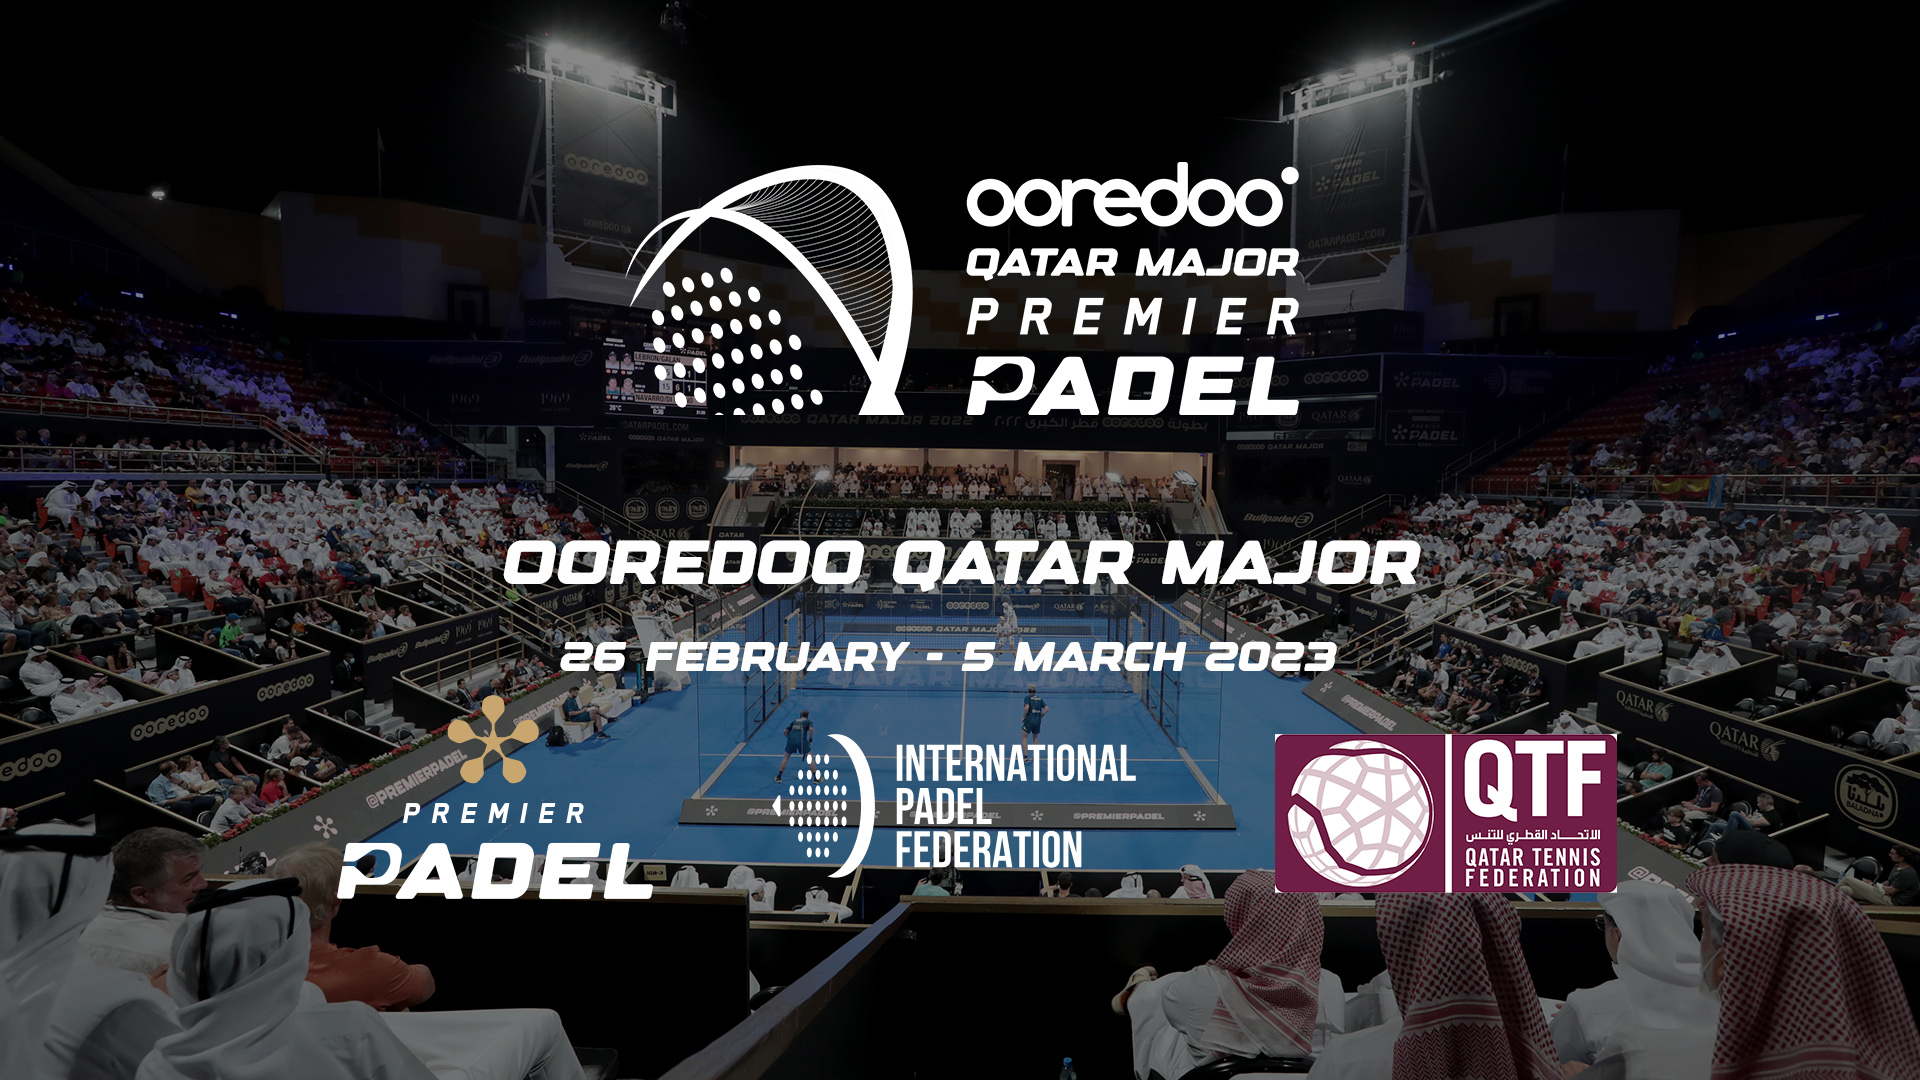 Premier Padel – ¡El ooredoo Qatar Major 2023 en Doha del 26 de febrero al 5 de marzo!